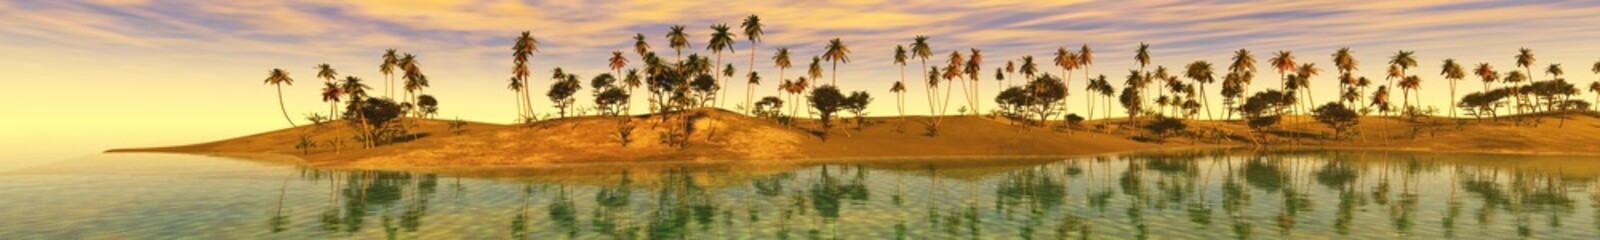 Panele Szklane  zachód słońca nad oceanem, wyspa na morzu, panoramiczny widok na zachód słońca w morzu, palmy na wyspie.